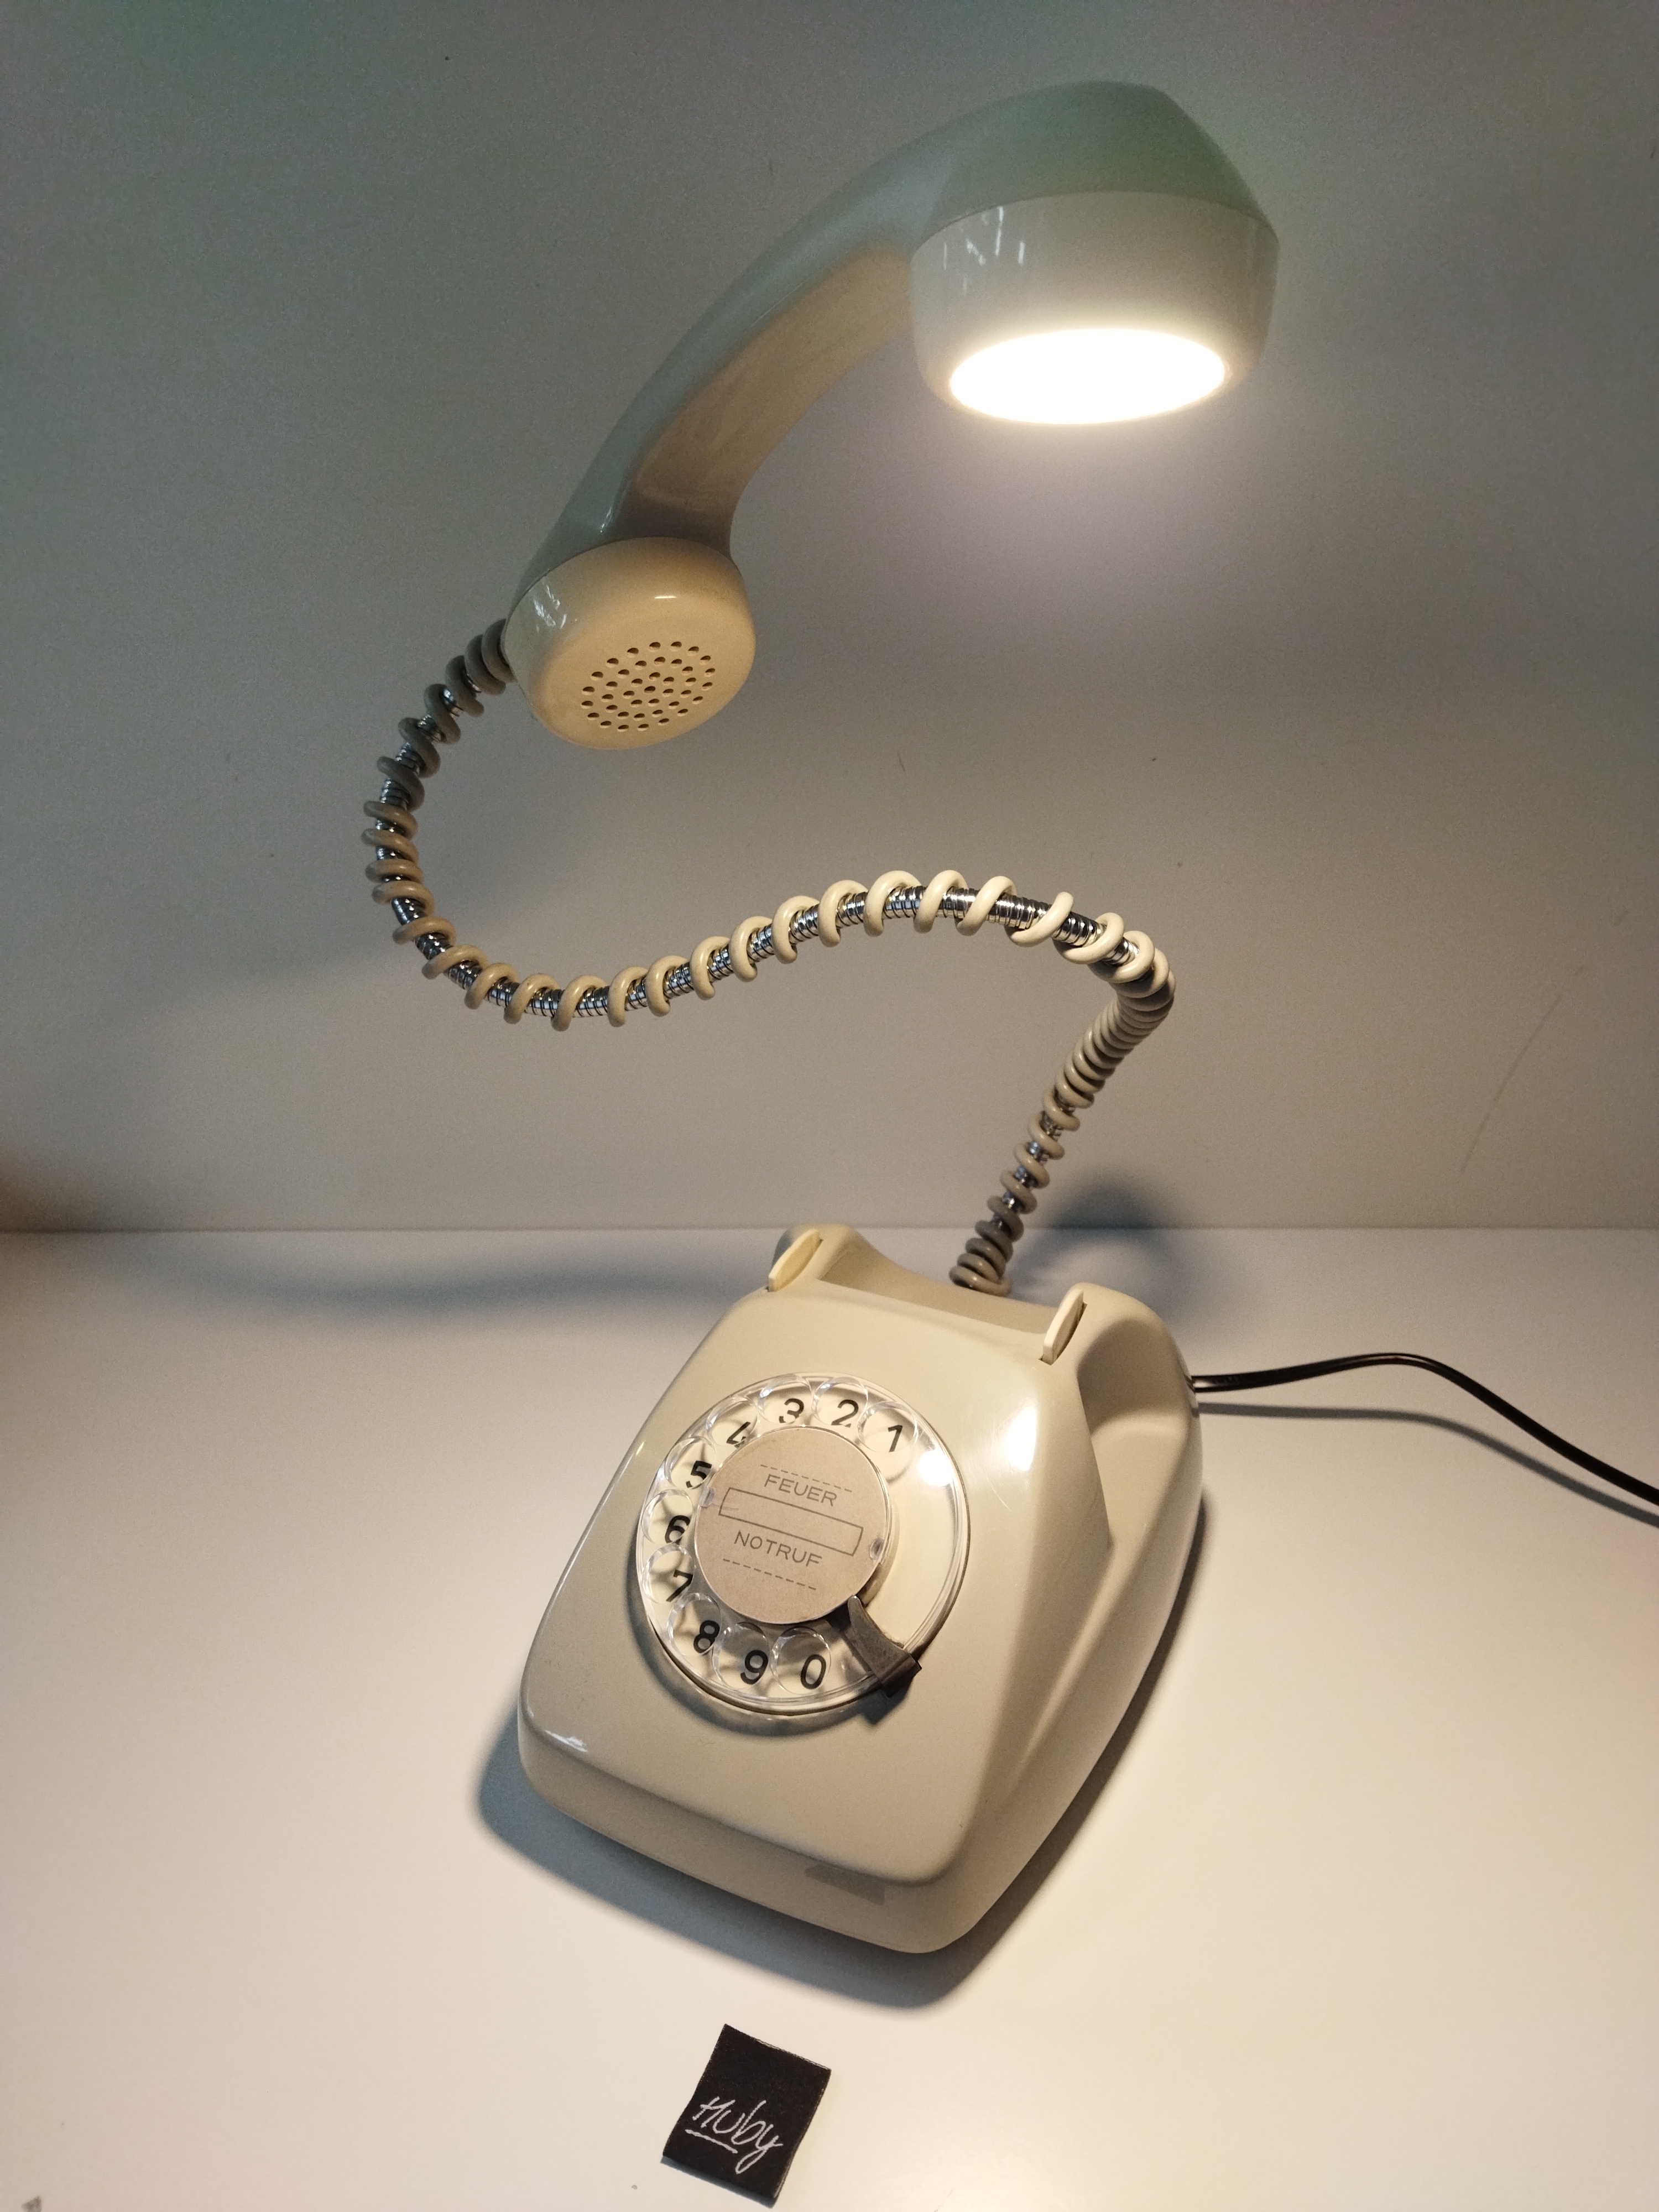 Die Telefon-Leuchte Model: FeTAp 611-2 von 1972